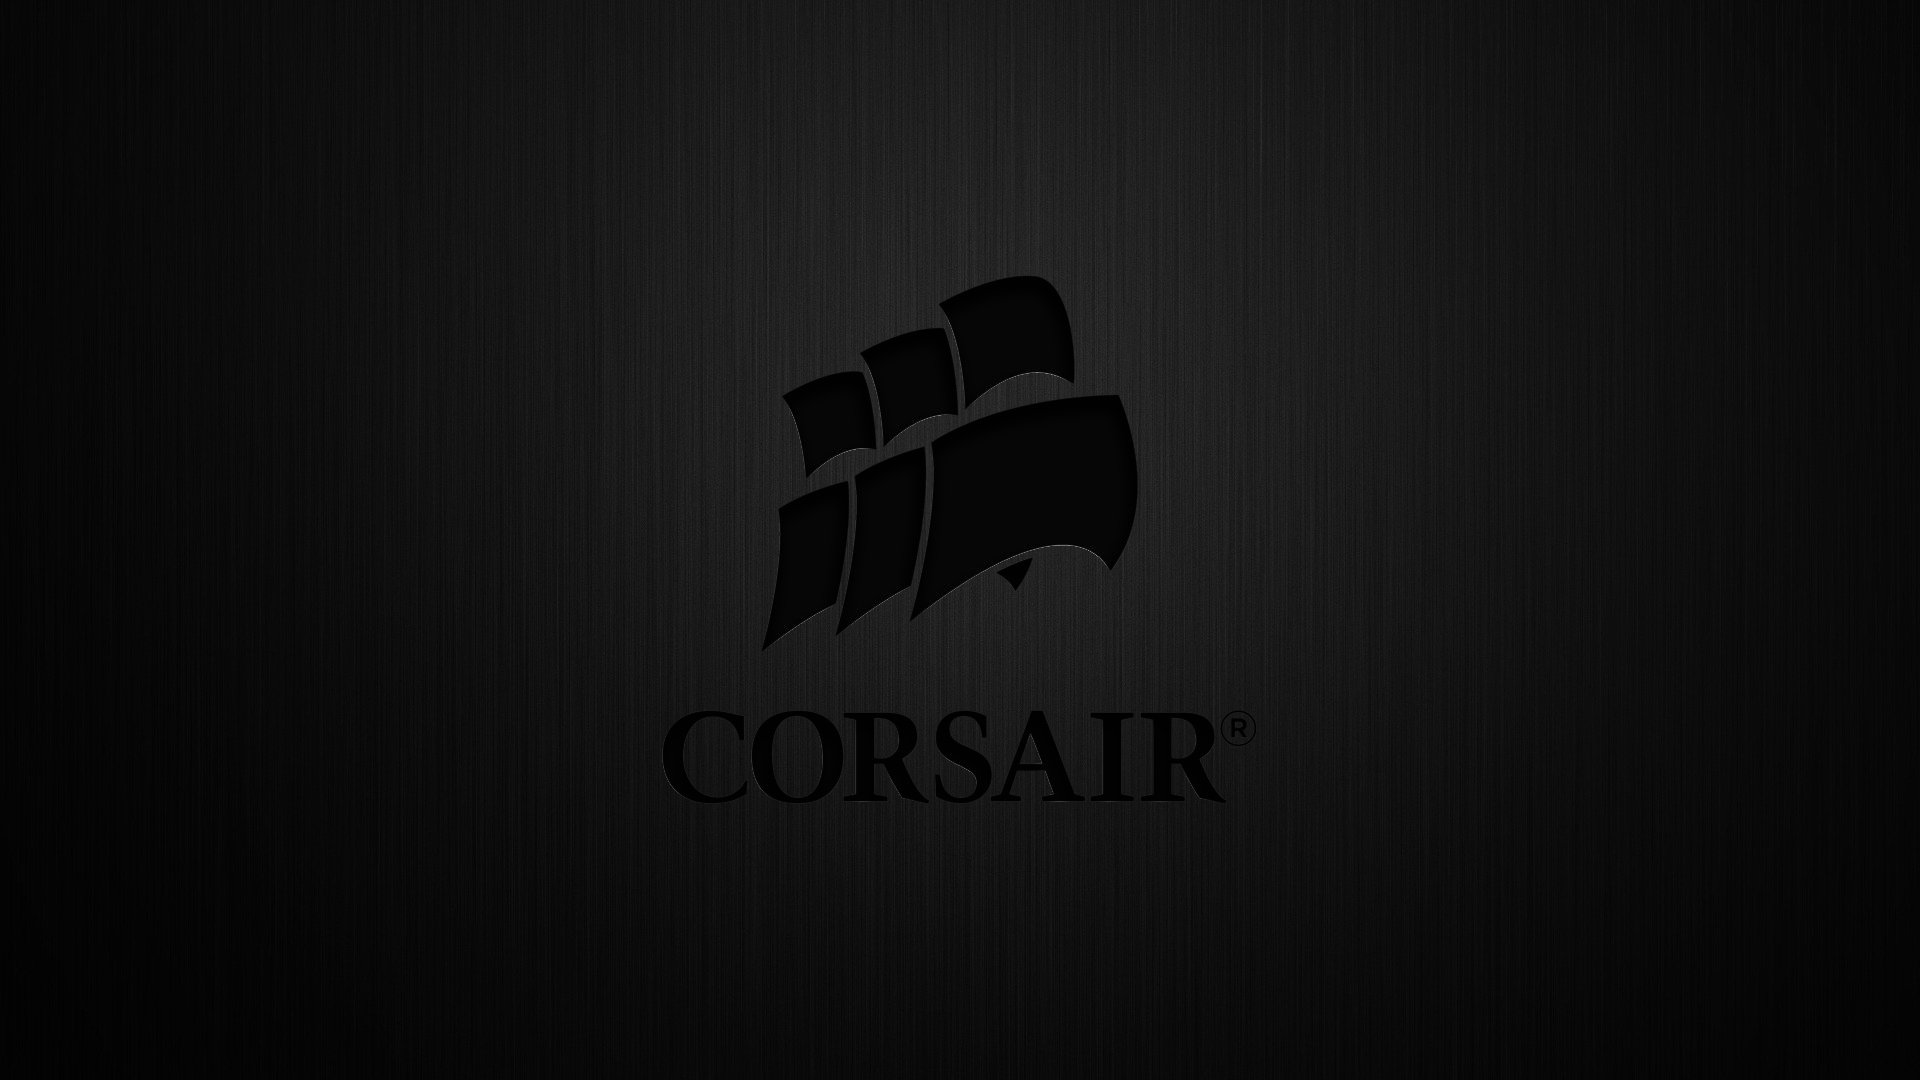 47+] Corsair Wallpapers - WallpaperSafari